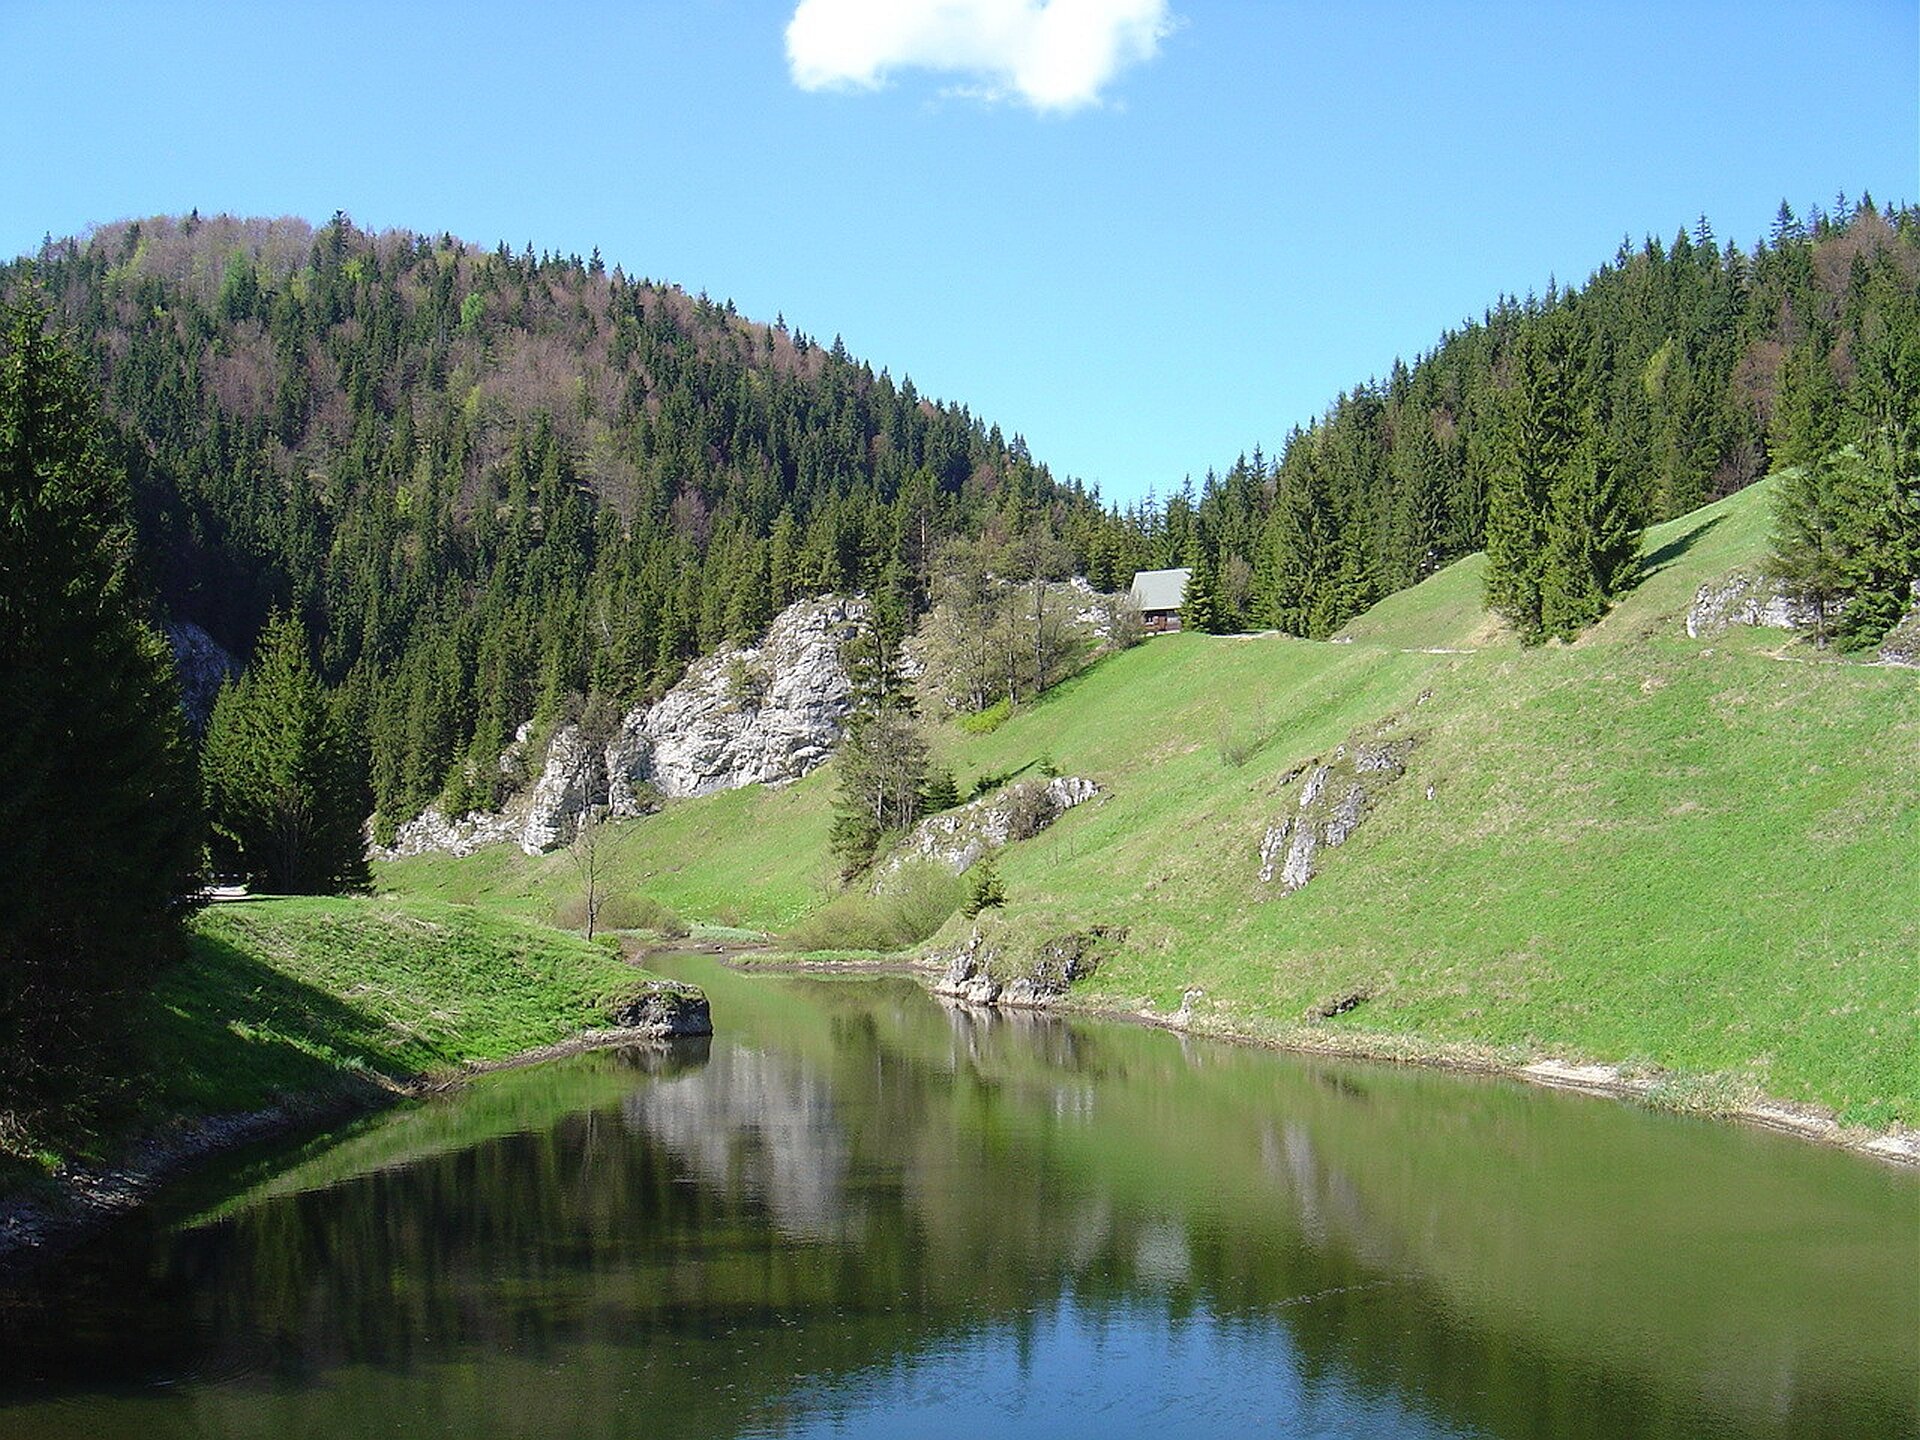 Ilustracja przedstawia fotografię „Stratenská píla w Słowackim Raju”, autorstwa Kristiany Slimak. Na zdjęciu widoczny jest łagodny, górski krajobraz z rzeczką. W oddali, pośród porośniętych choinkami zboczy i skał widnieje mały domek ze spadzistym dachem.